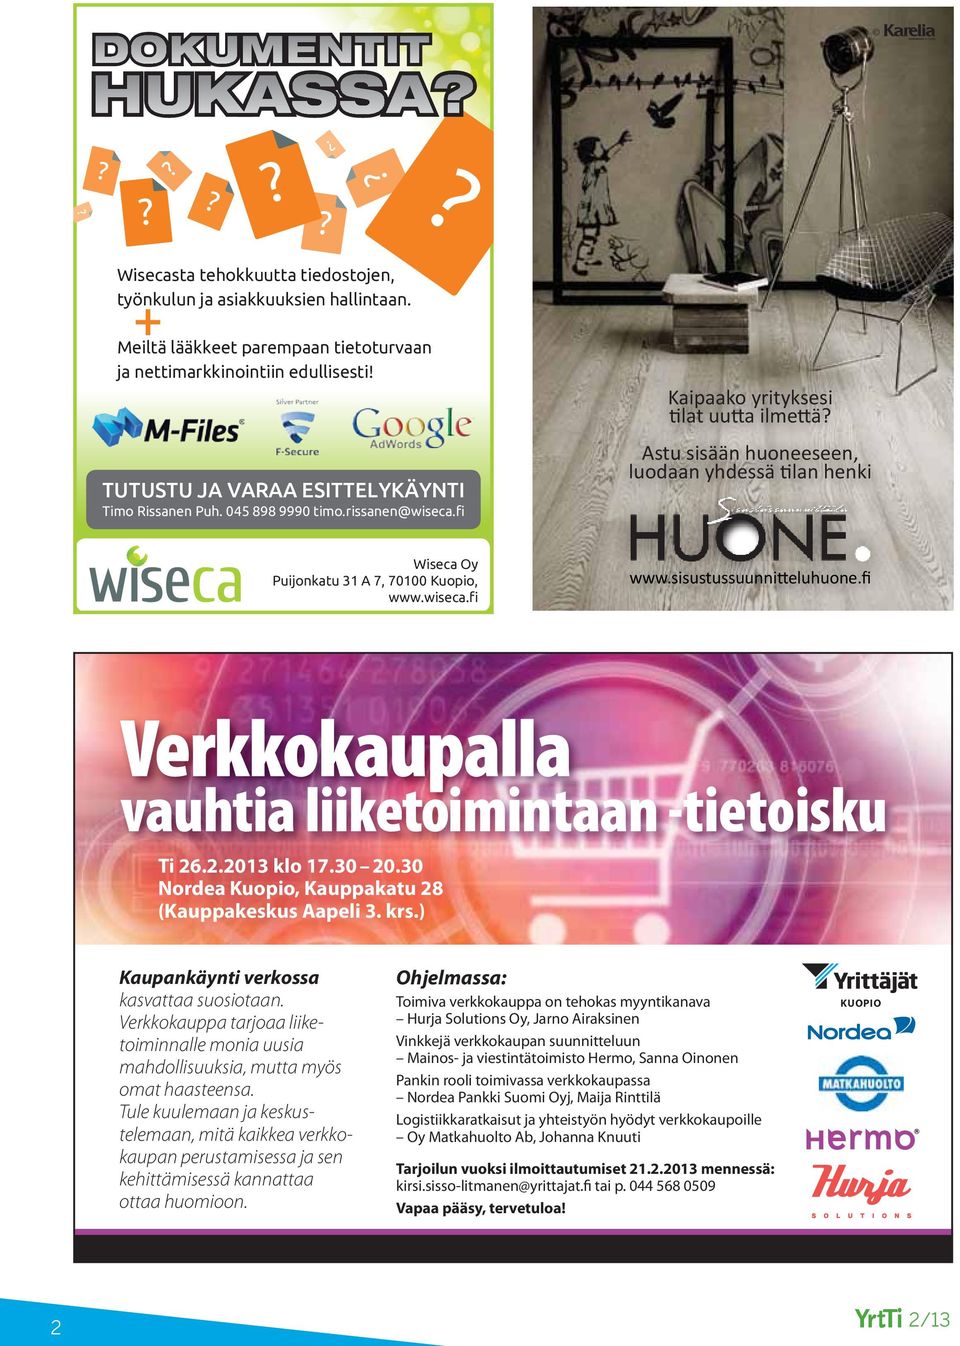 Astu sisään huoneeseen, luodaan yhdessä tilan henki Wiseca Oy Puijonkatu 31 A 7, 70100 Kuopio, www.wiseca.fi www.sisustussuunnitteluhuone.fi Verkkokaupalla vauhtia liiketoimintaan -tietoisku Ti 26